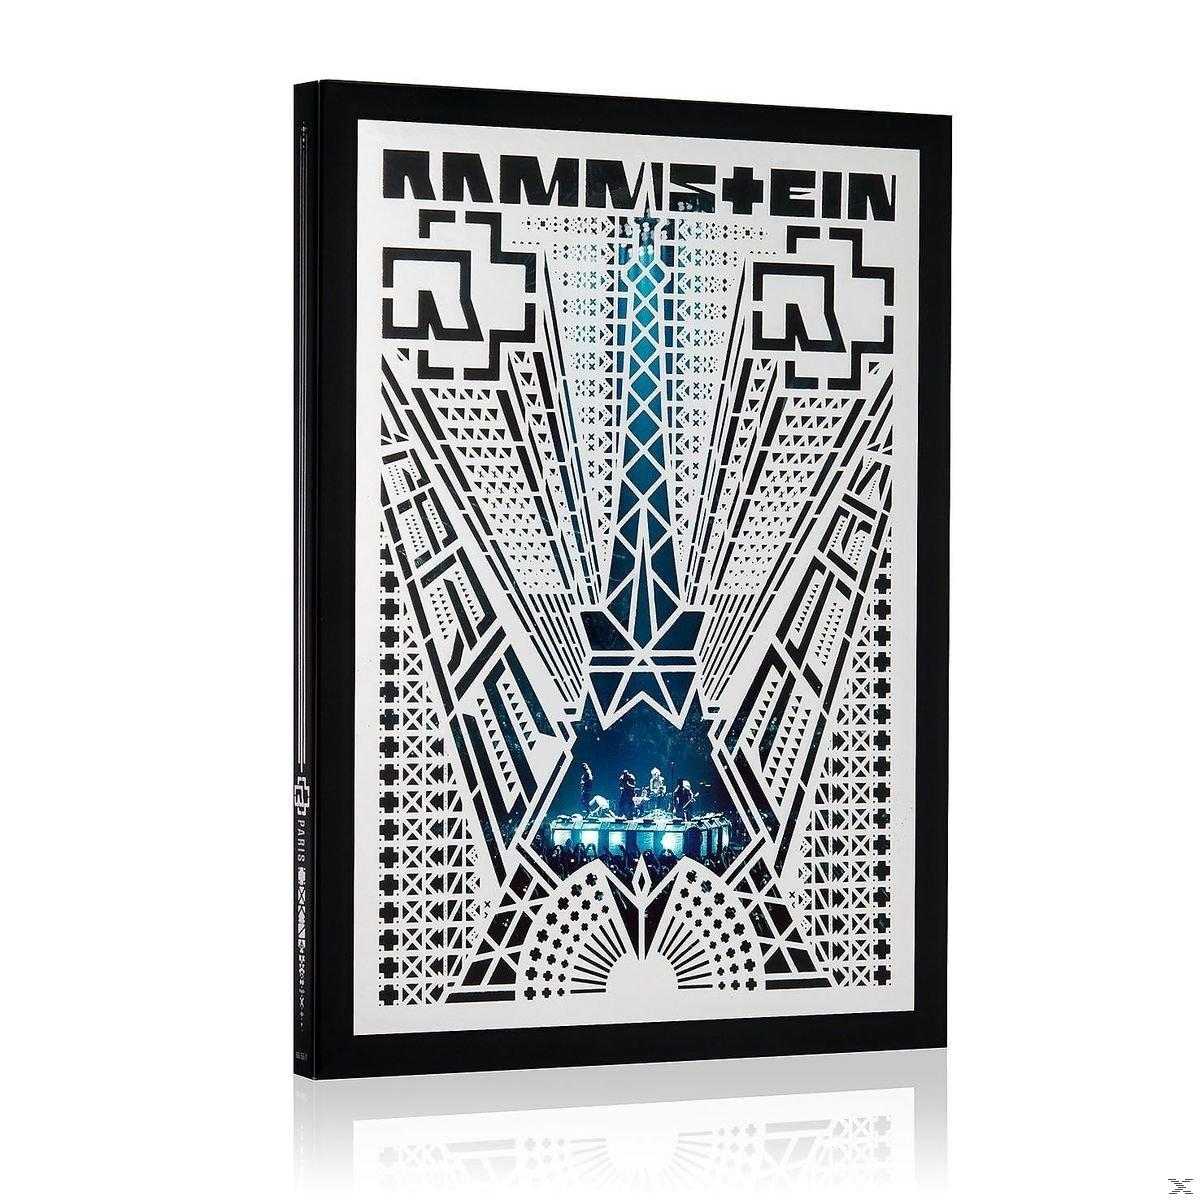 - Rammstein Rammstein: (Blu-ray) Edt.) - Paris (Standard